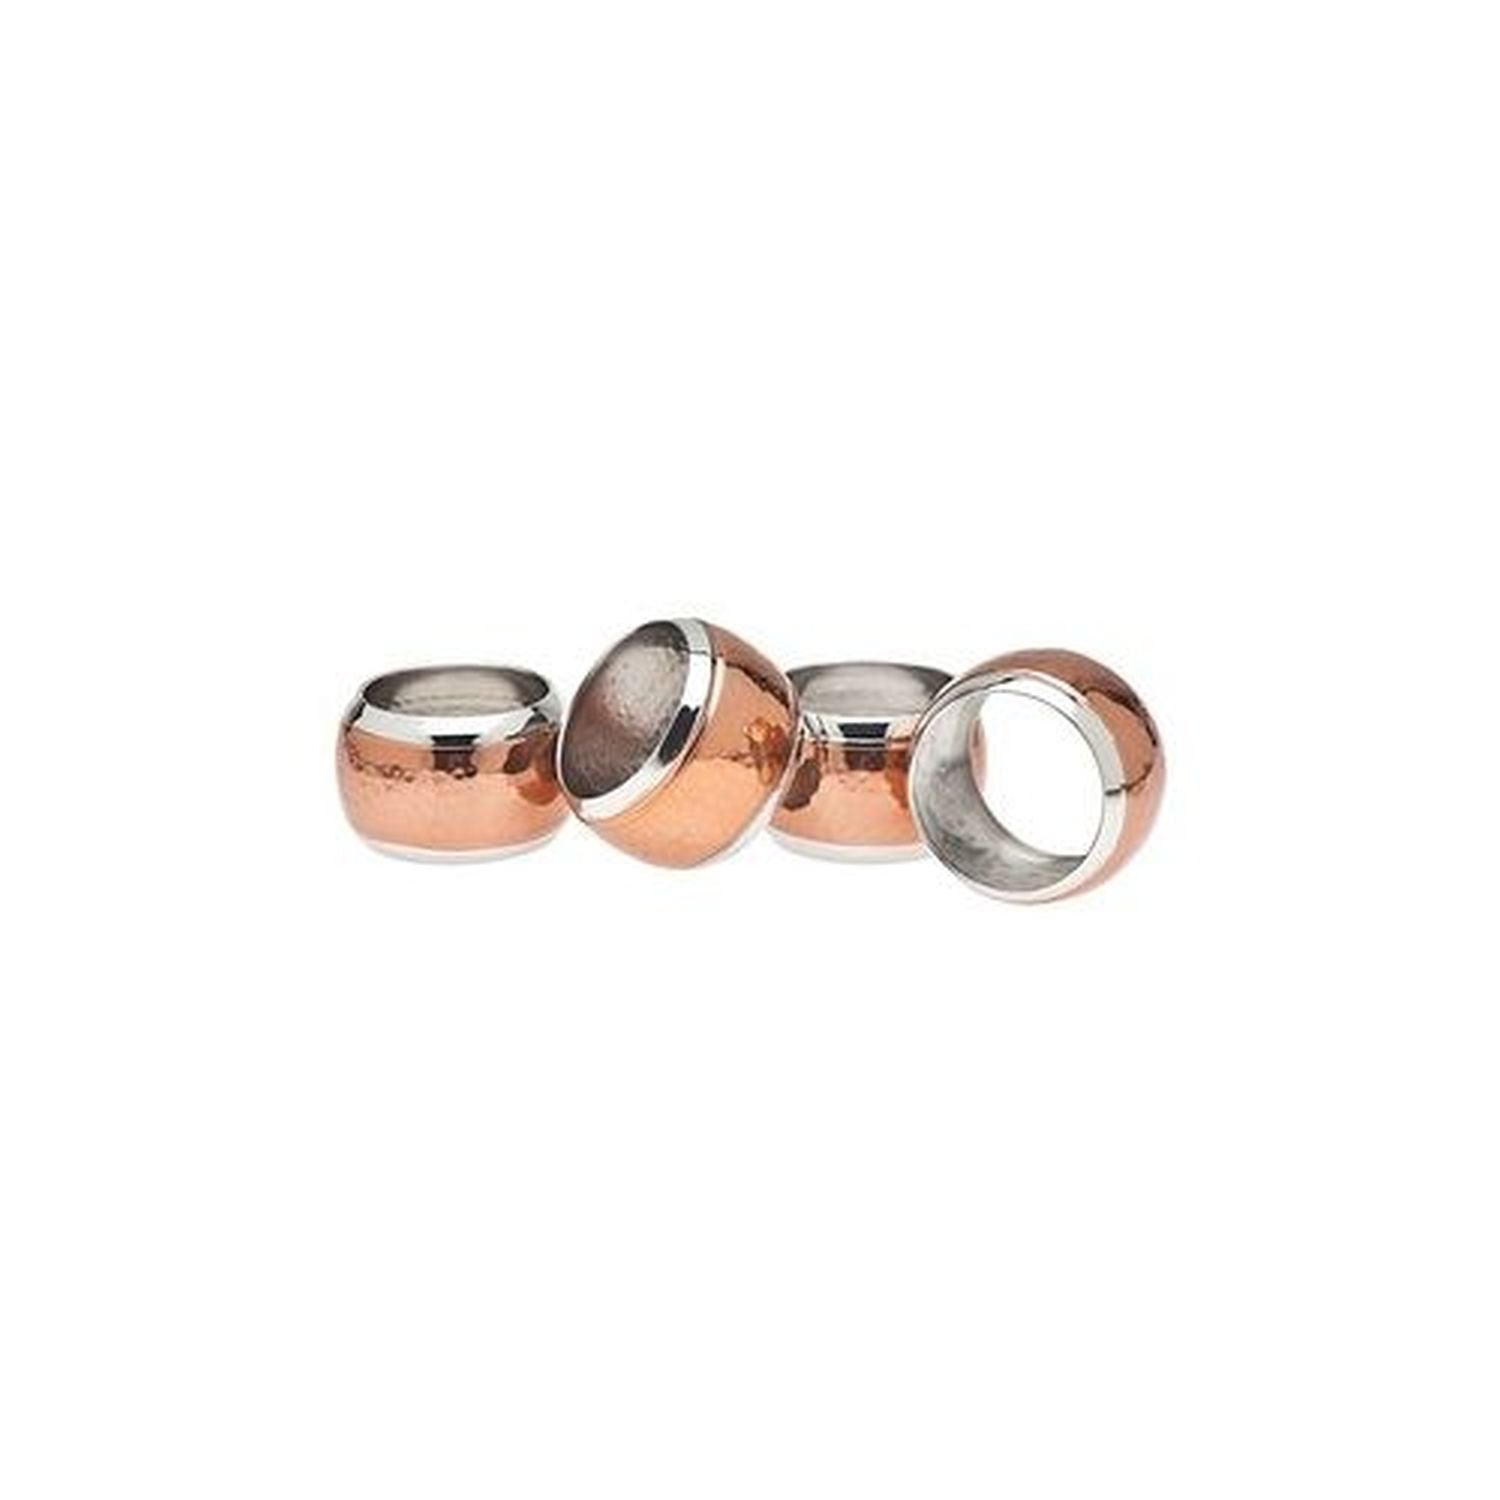 Godinger Copper Napkin Ring Hammerd Set of 4 by Godinger